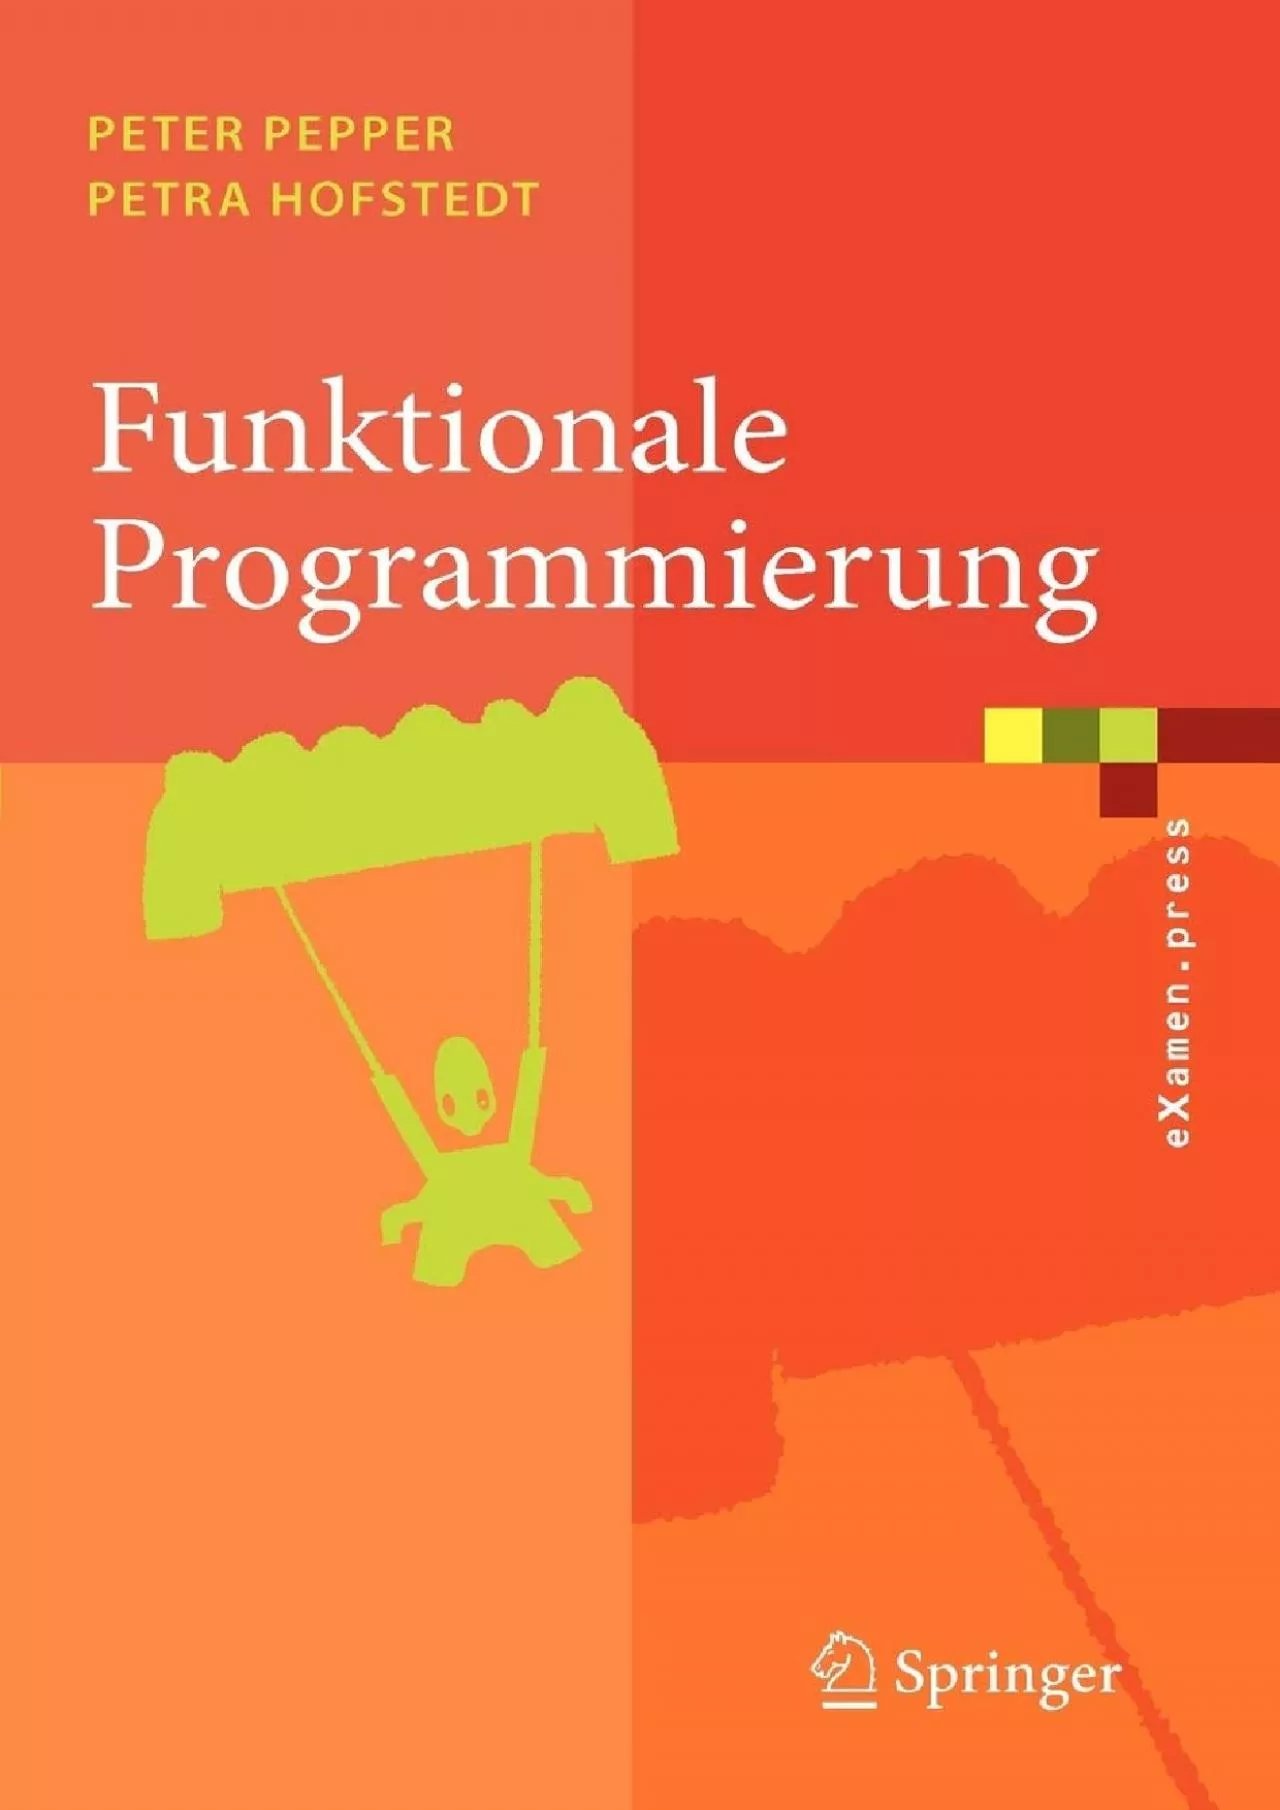 [PDF]-Funktionale Programmierung: Sprachdesign und Programmiertechnik (eXamen.press) (German